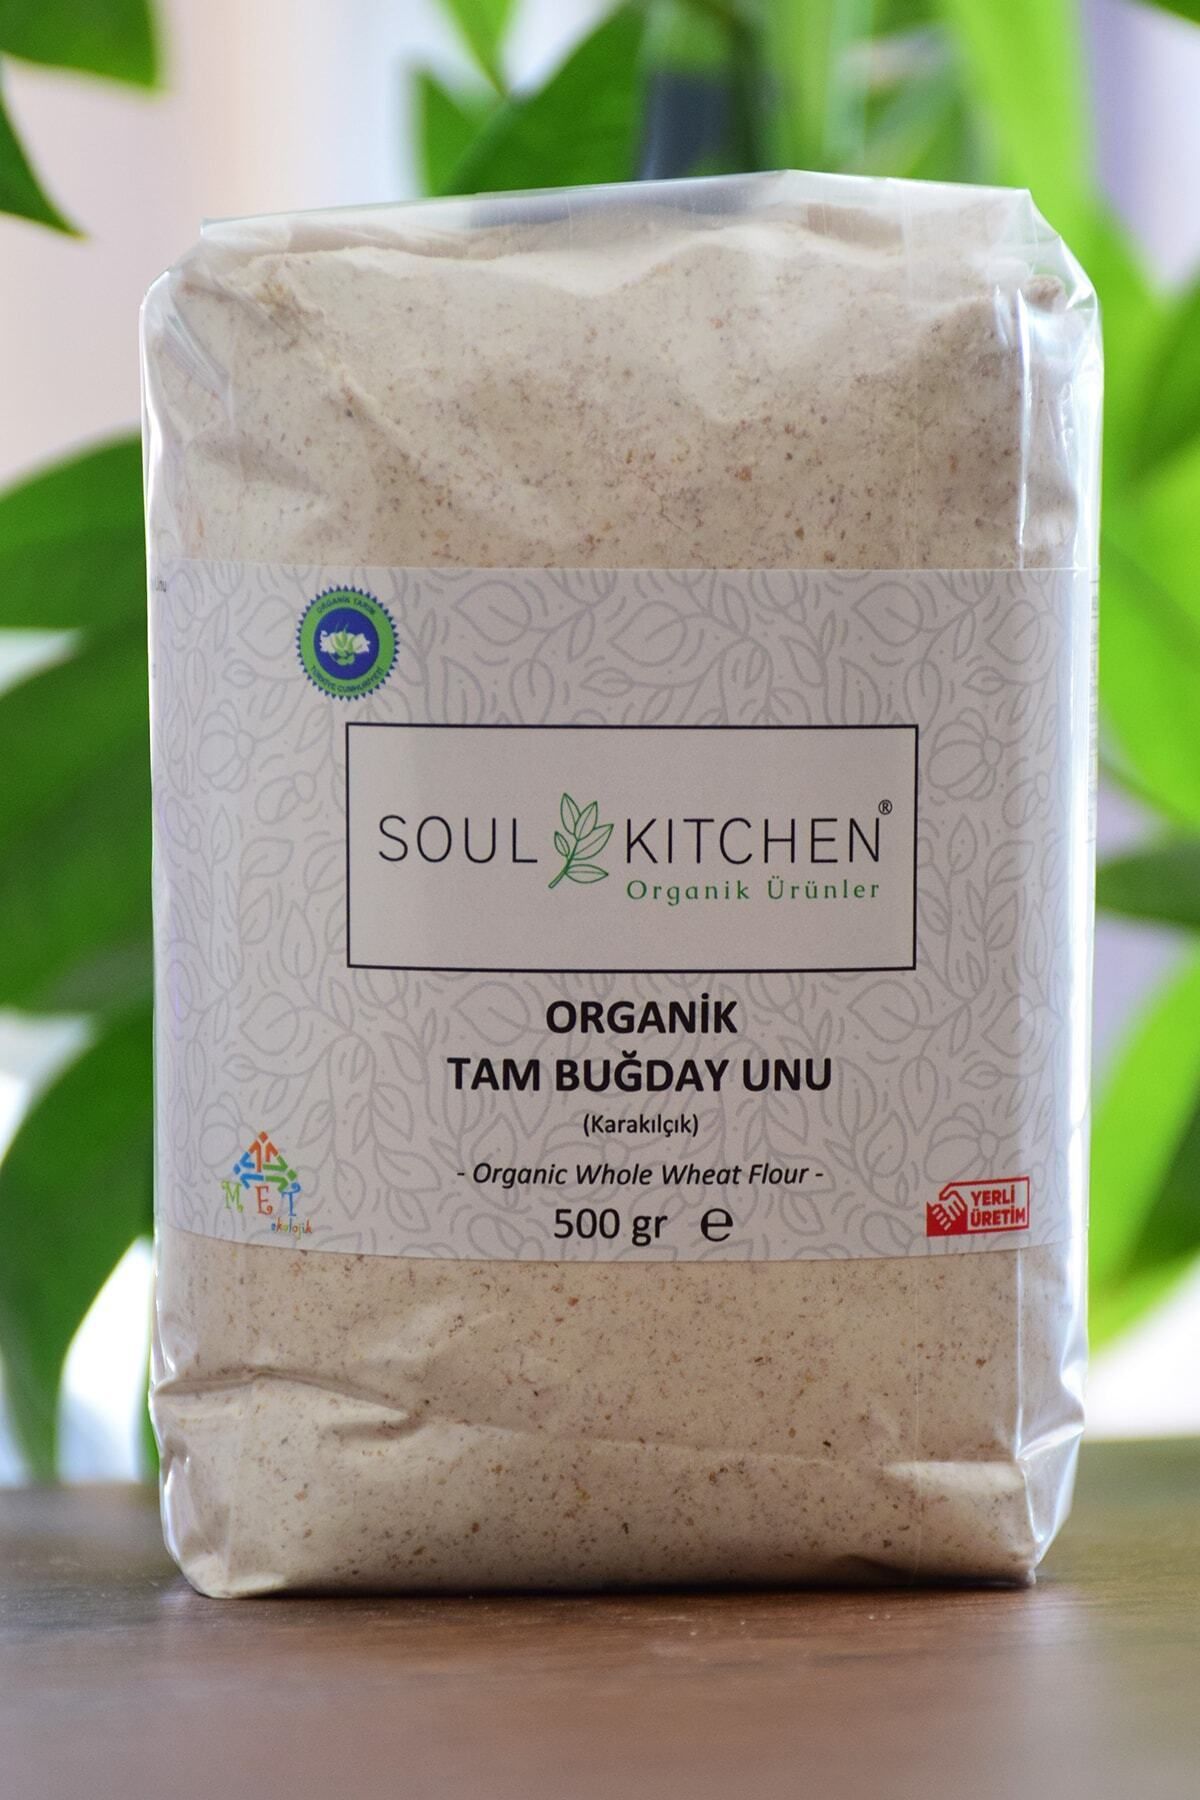 Soul Kitchen Organik Ürünler Organik Tam Buğday Unu (Karakılçık) 500gr